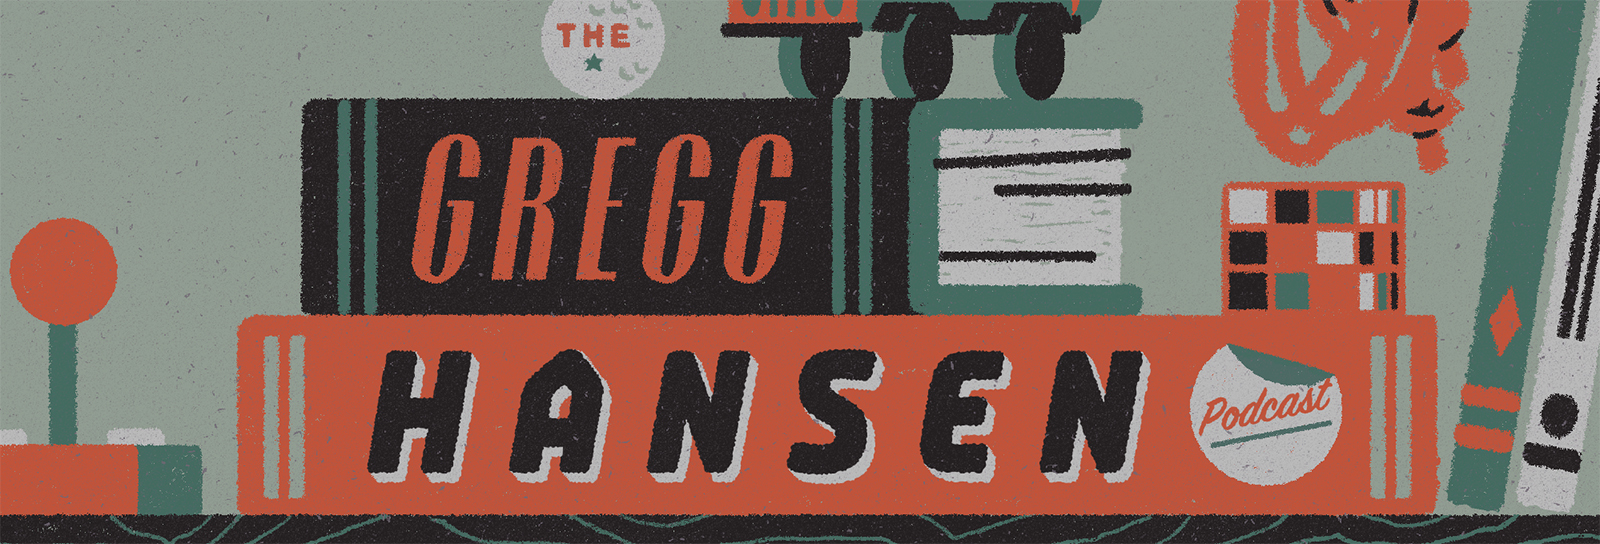 The Gregg Hansen Podcast